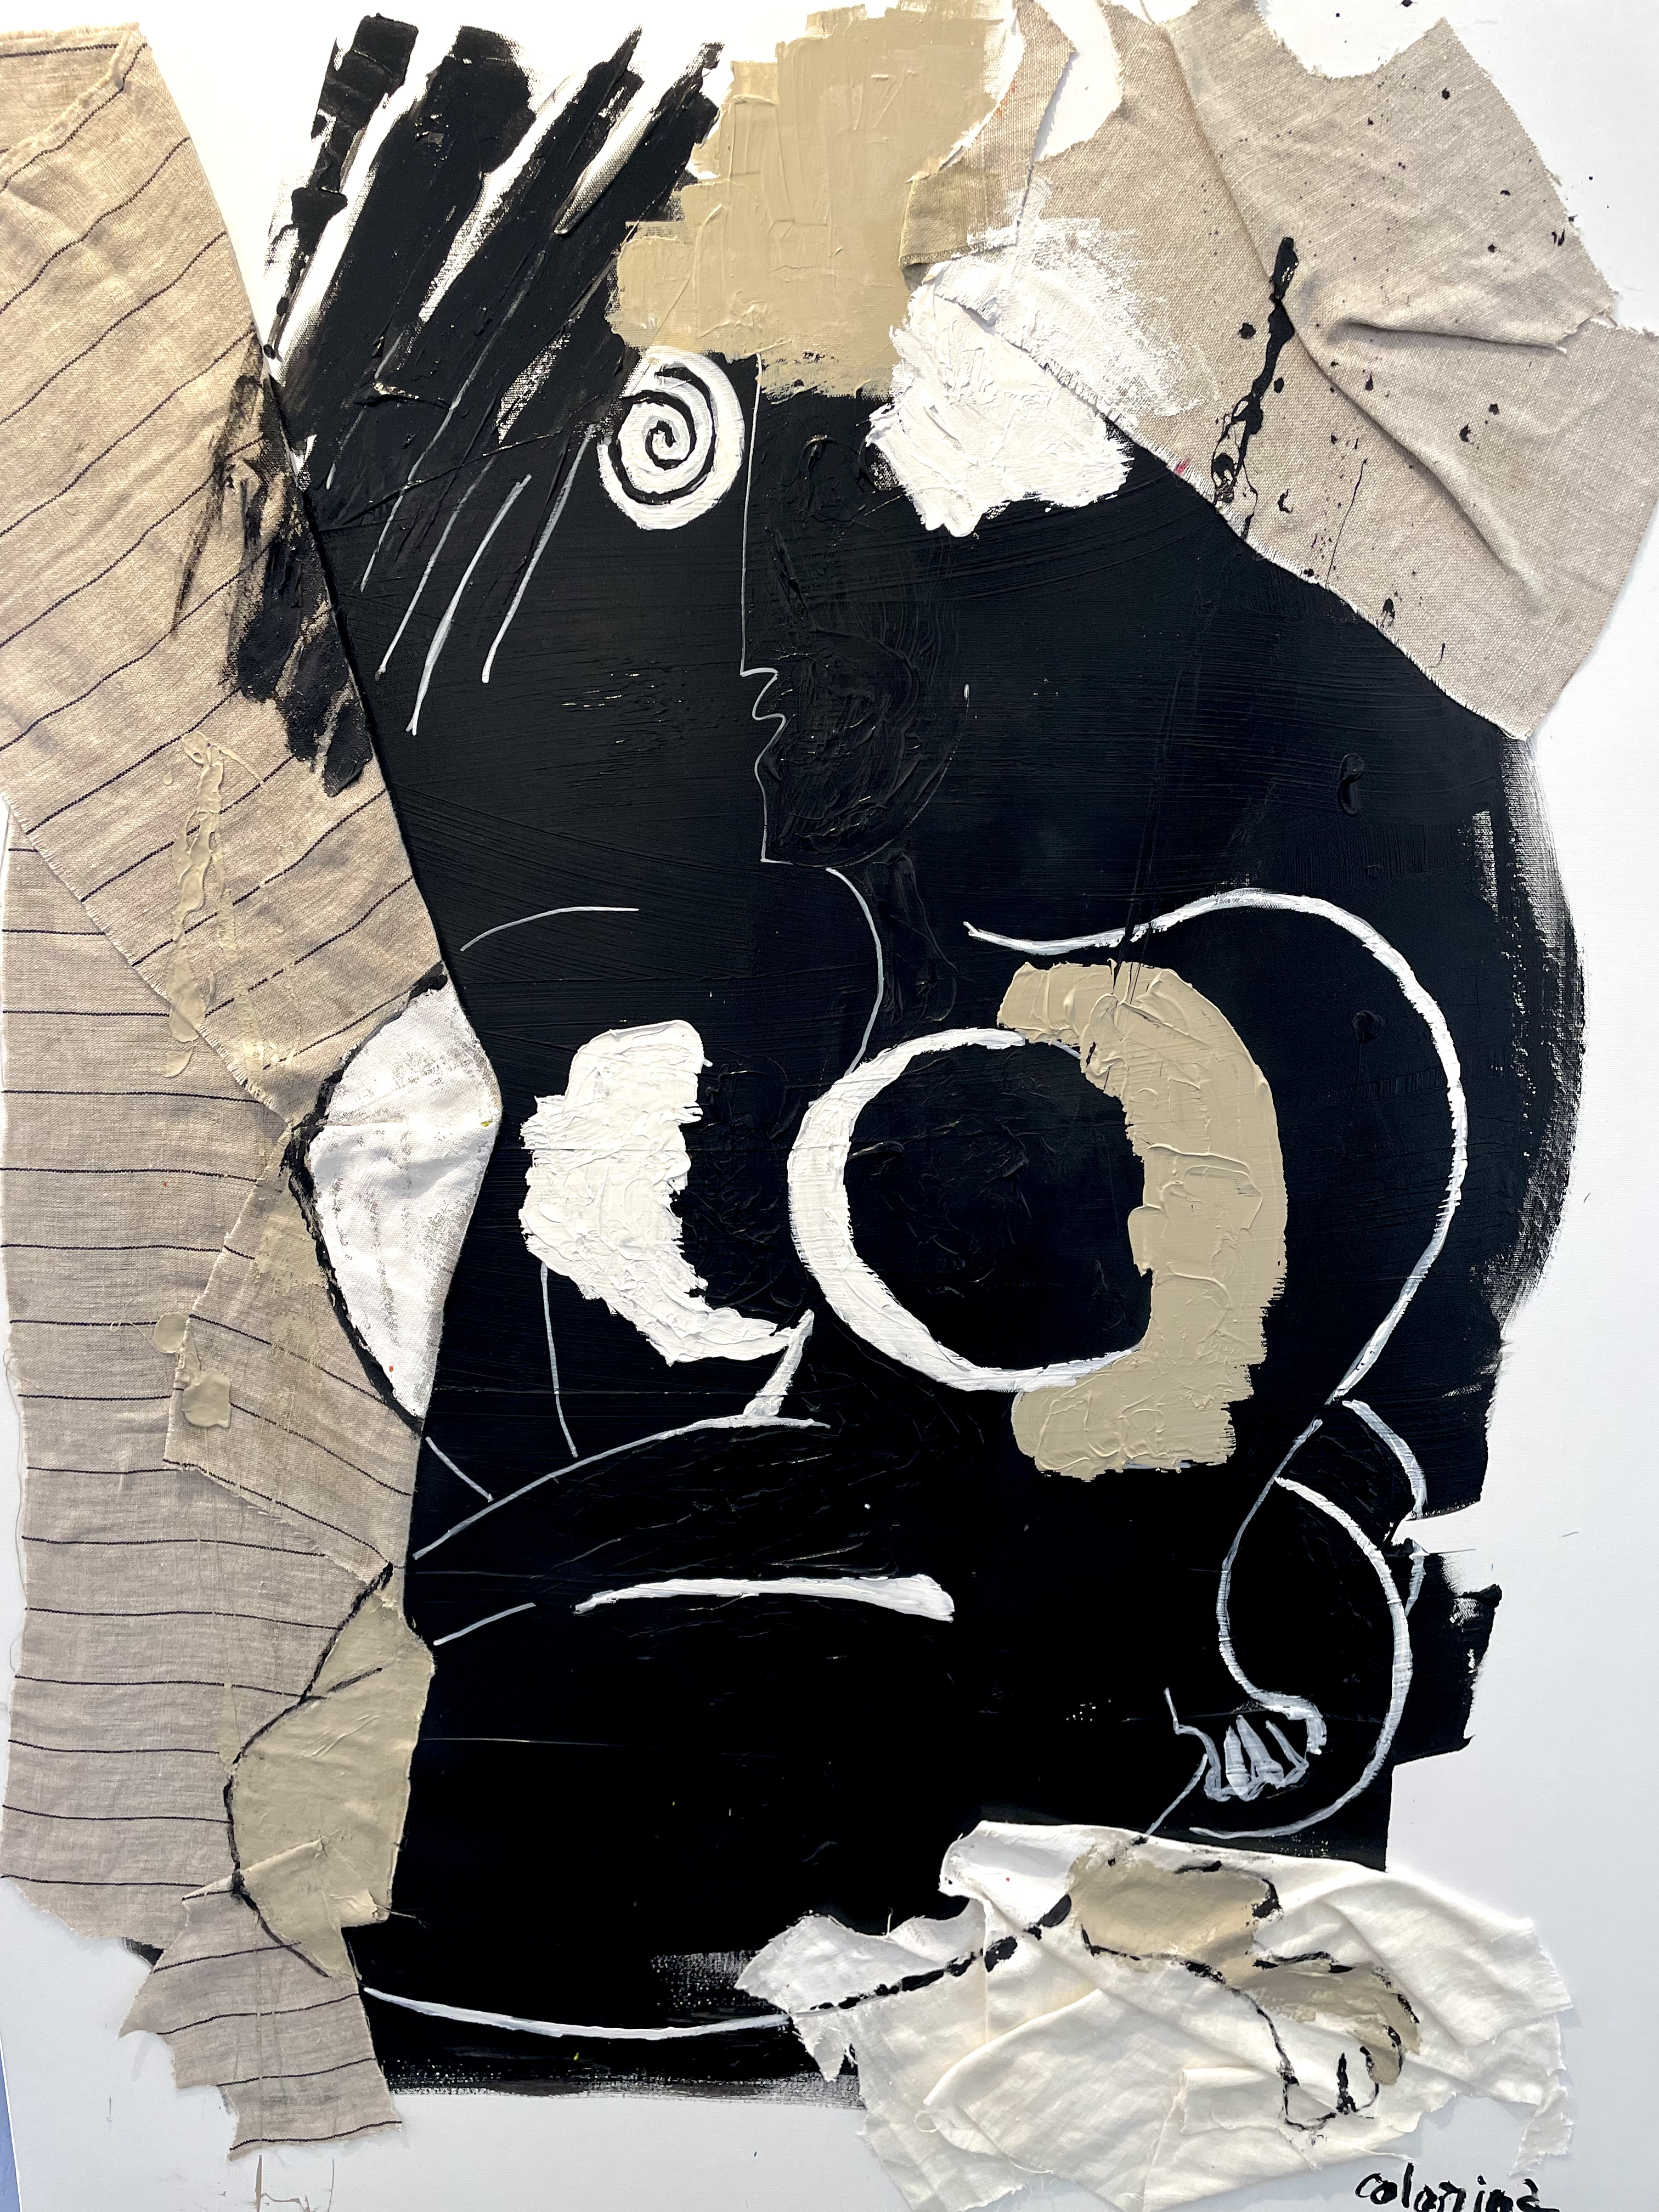 Tirez Le rideau_114 x 146_Oeuvre de l'artiste Jorge Colomina à la Galerie Maner_art contemporain_art abstrait_technique mixte_monochrome